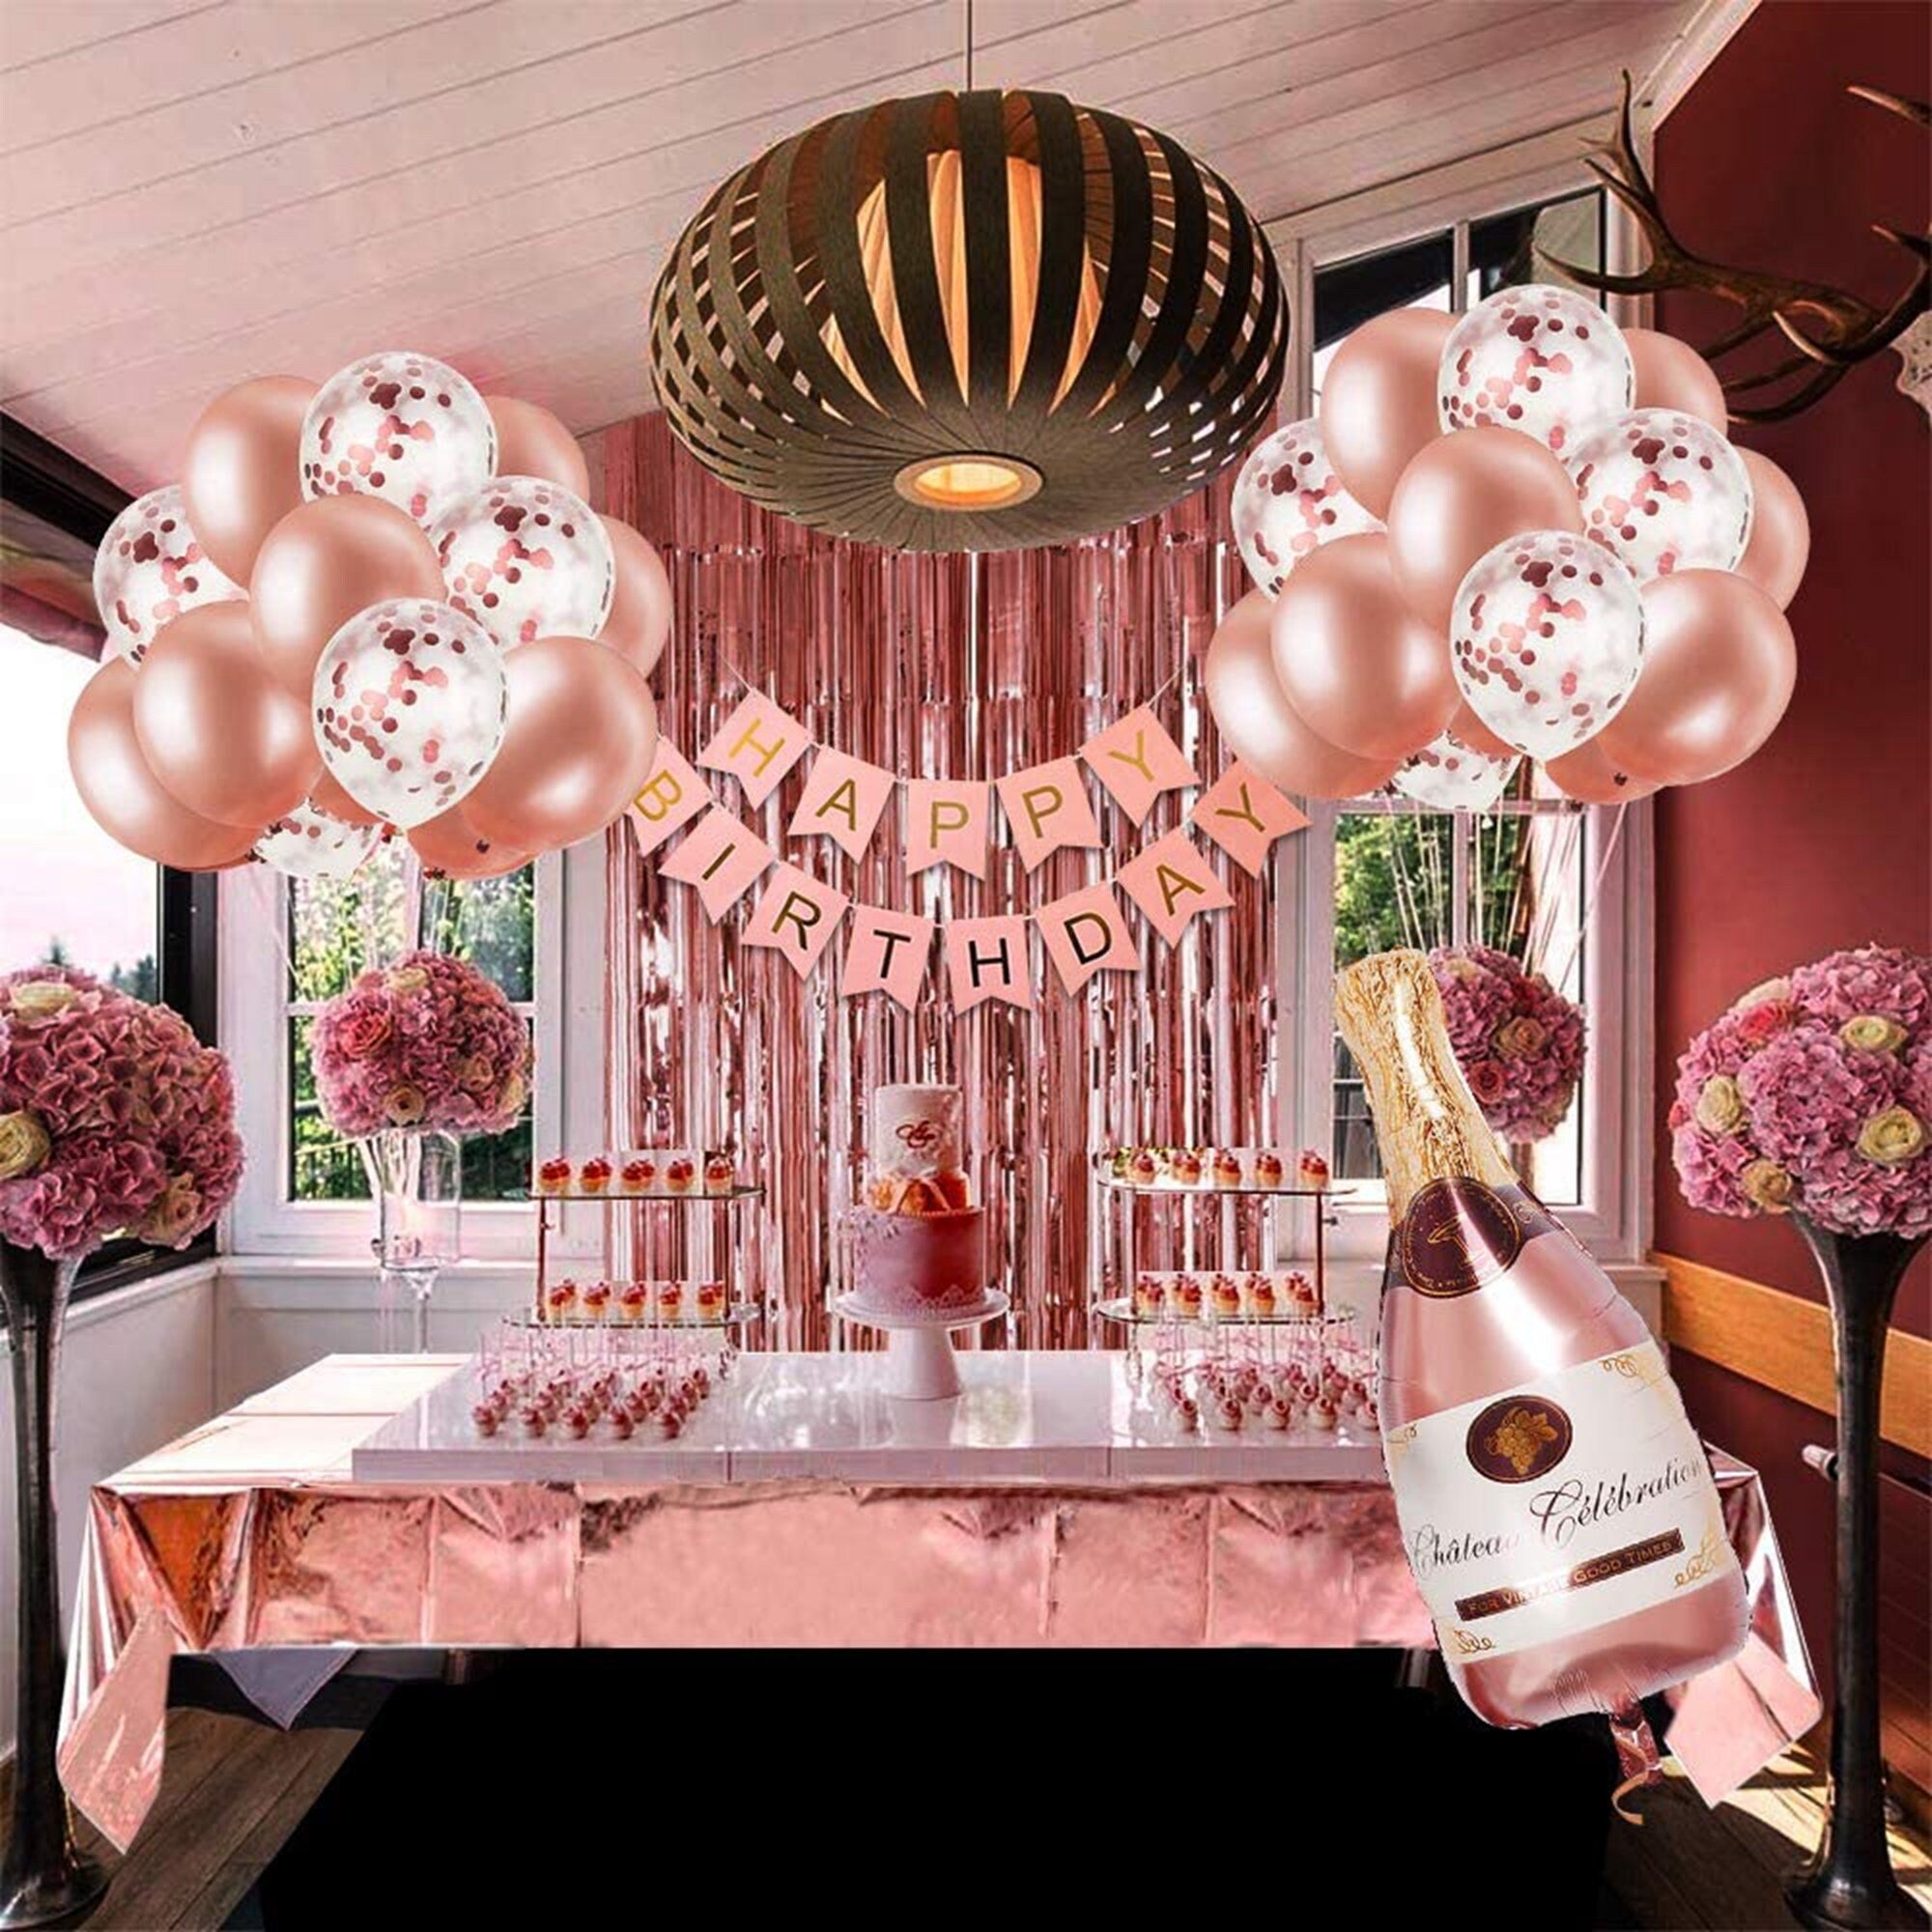 Ultimate Hapopy Birthday Rose Gold Birthday Pack Pom Pom Garland Balloons Decorations Party Happy Birthday